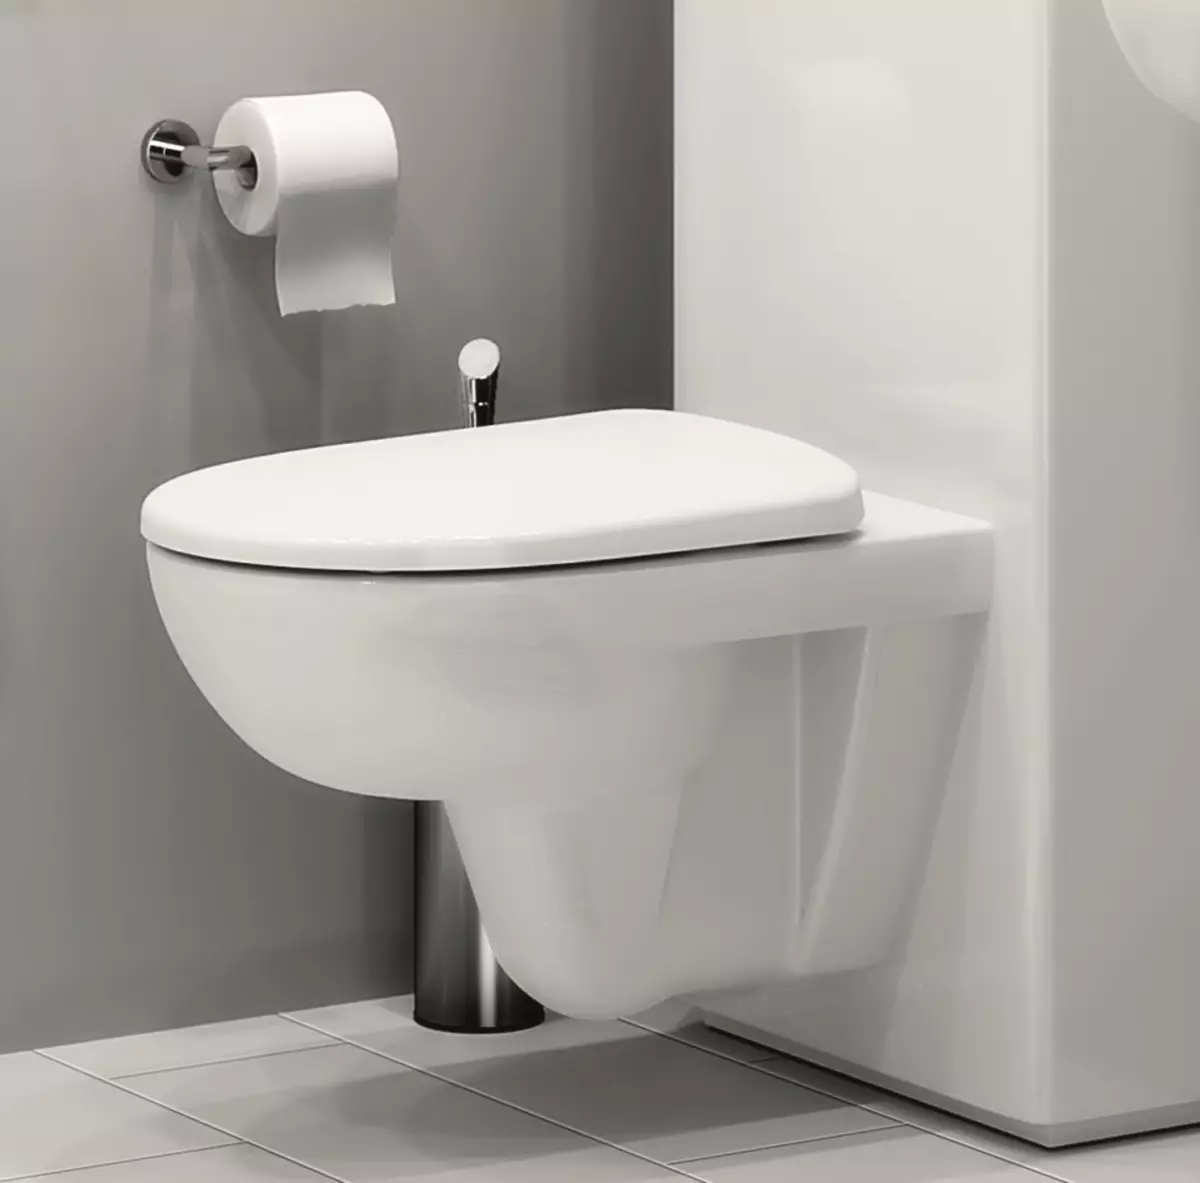 Toalety Kolo: opis zawieszonych i podłóg toalet, styl i solo, Nova Pro Rimfree i Runa, Idol i inne modele 10529_3